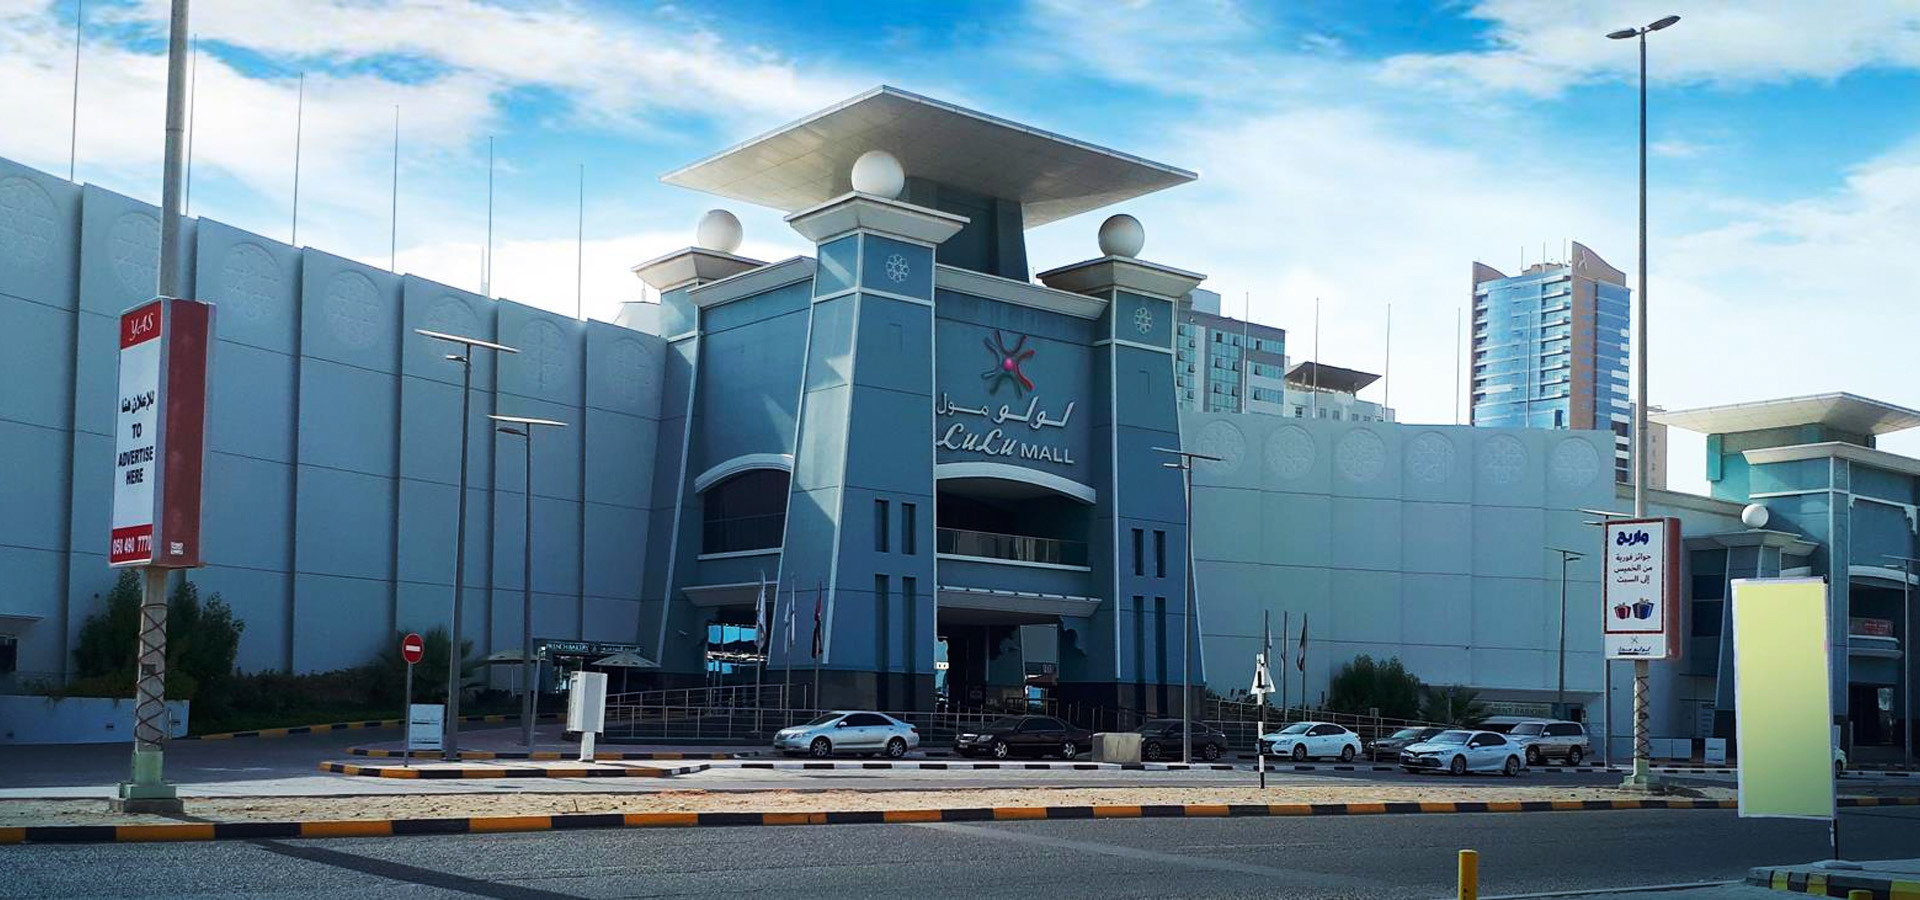 LuLu Mall Fujairah , UAE